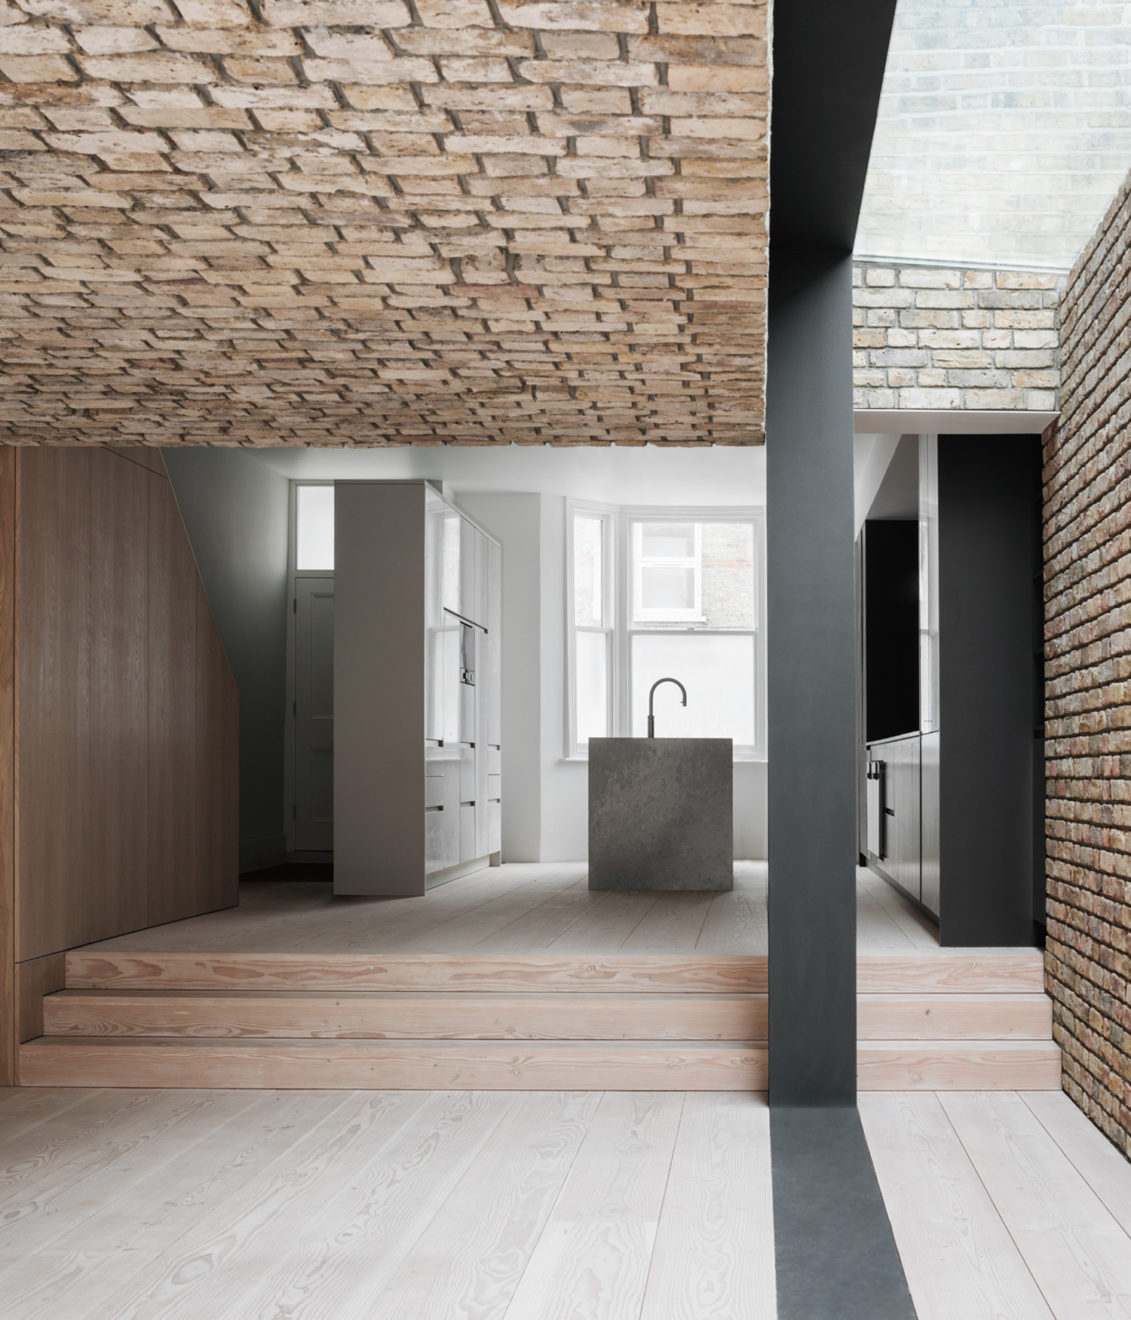 repoussoir by simone bossi - conform architects - aucoot estate agents